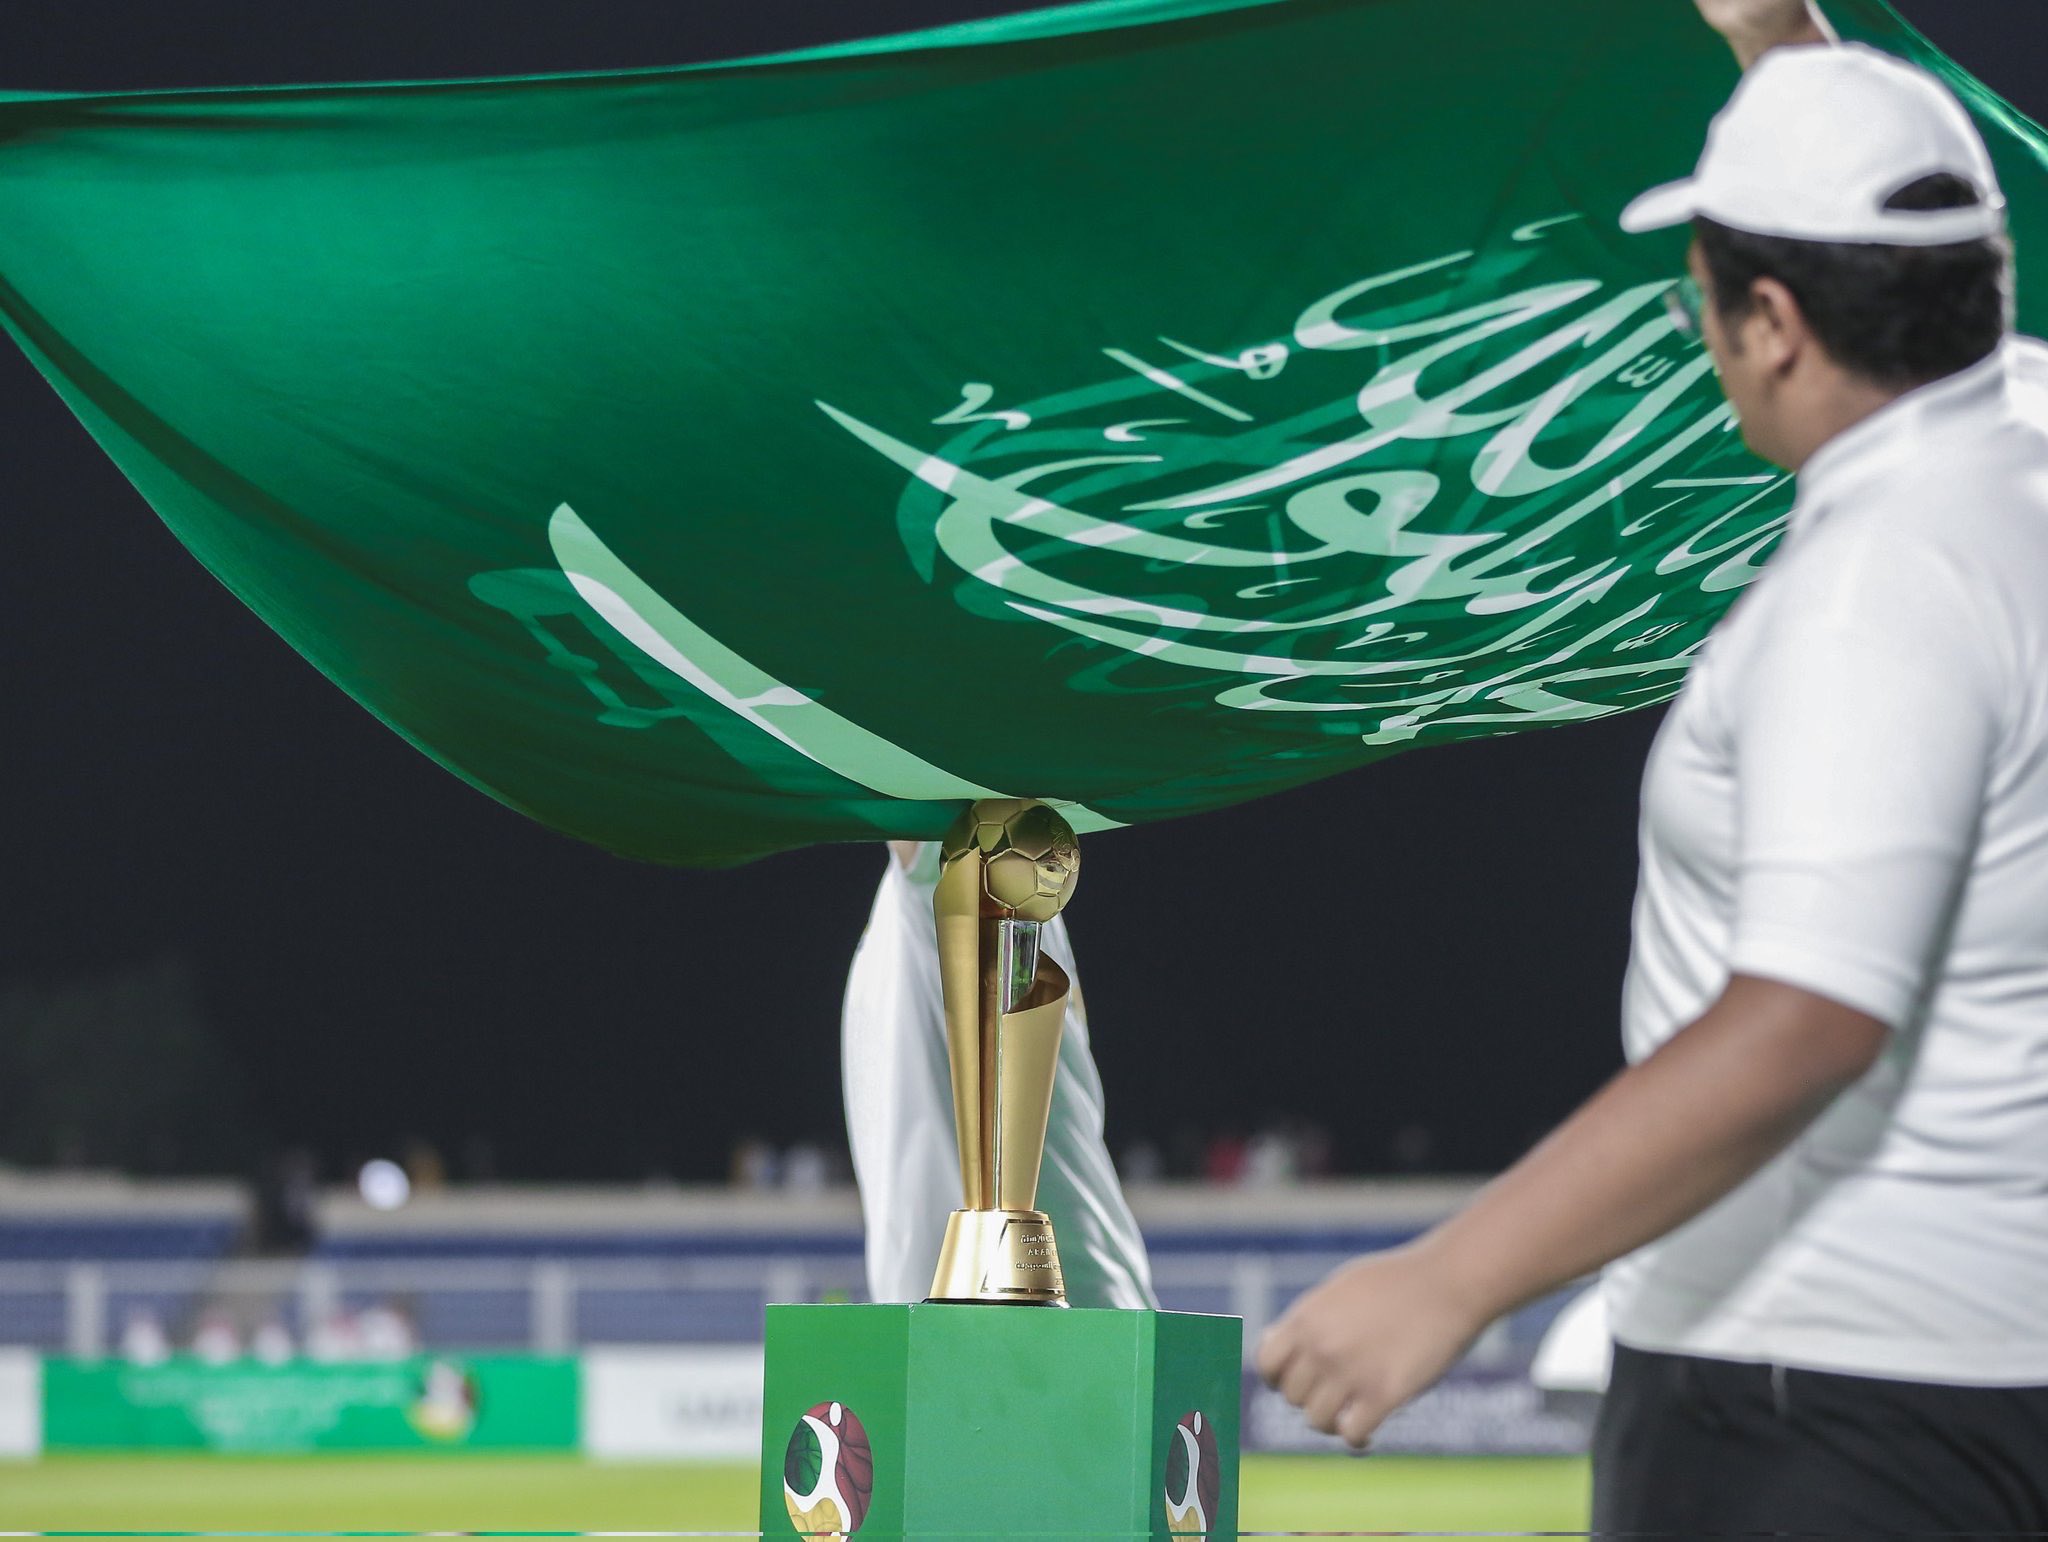 المنتخب السعودي الشاب يحصد كاس العرب بعد التغلب على مصر